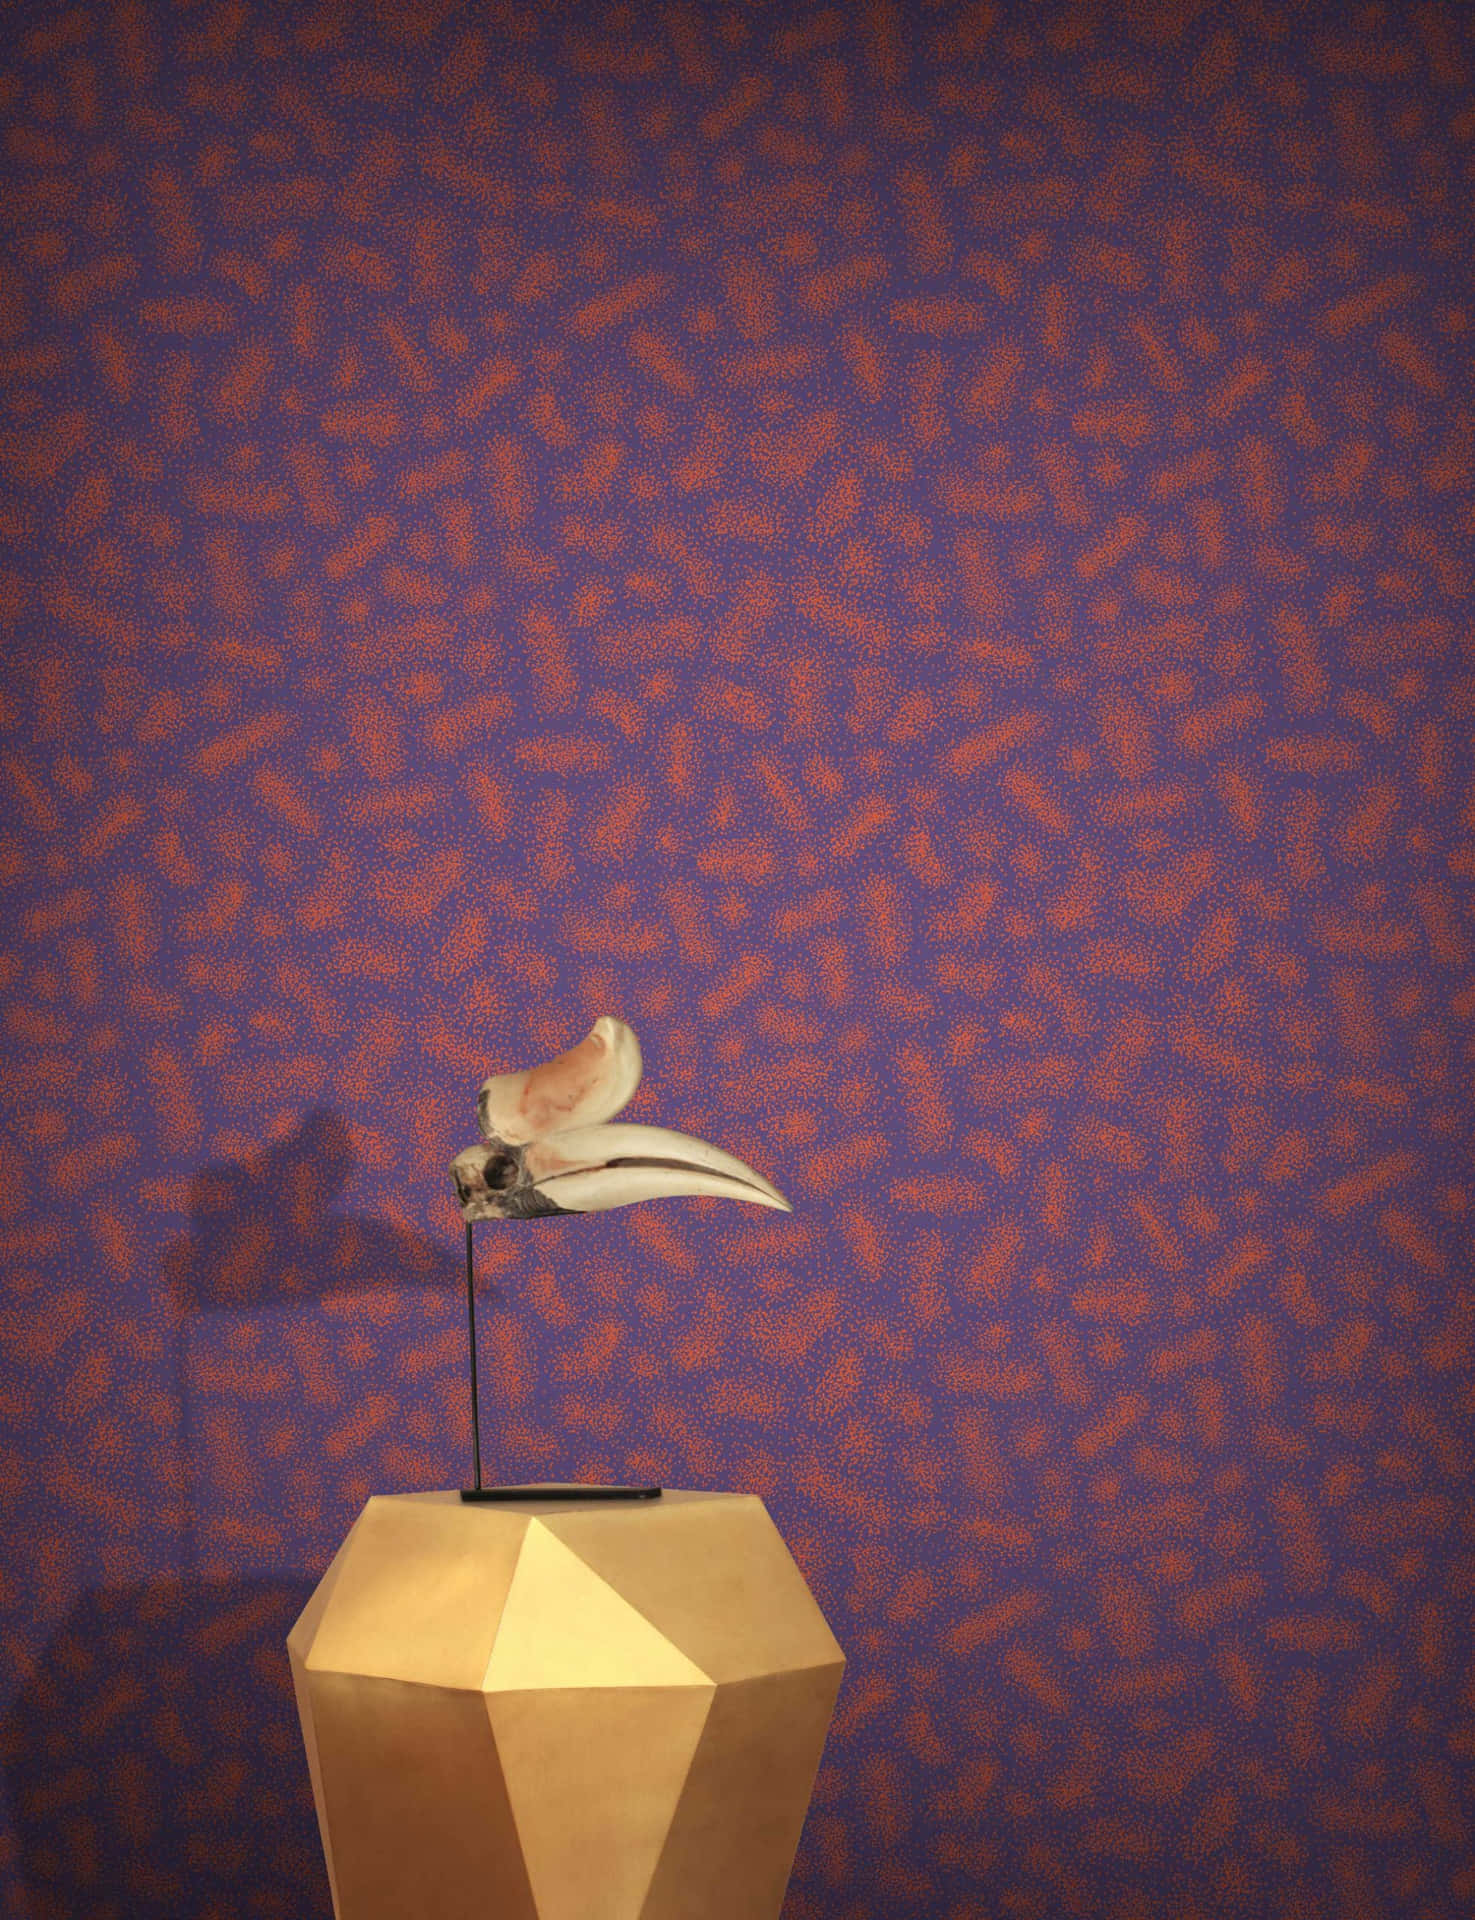 Eingoldener Vogel Sitzt Auf Einem Podest Vor Einer Lila Wand. Wallpaper